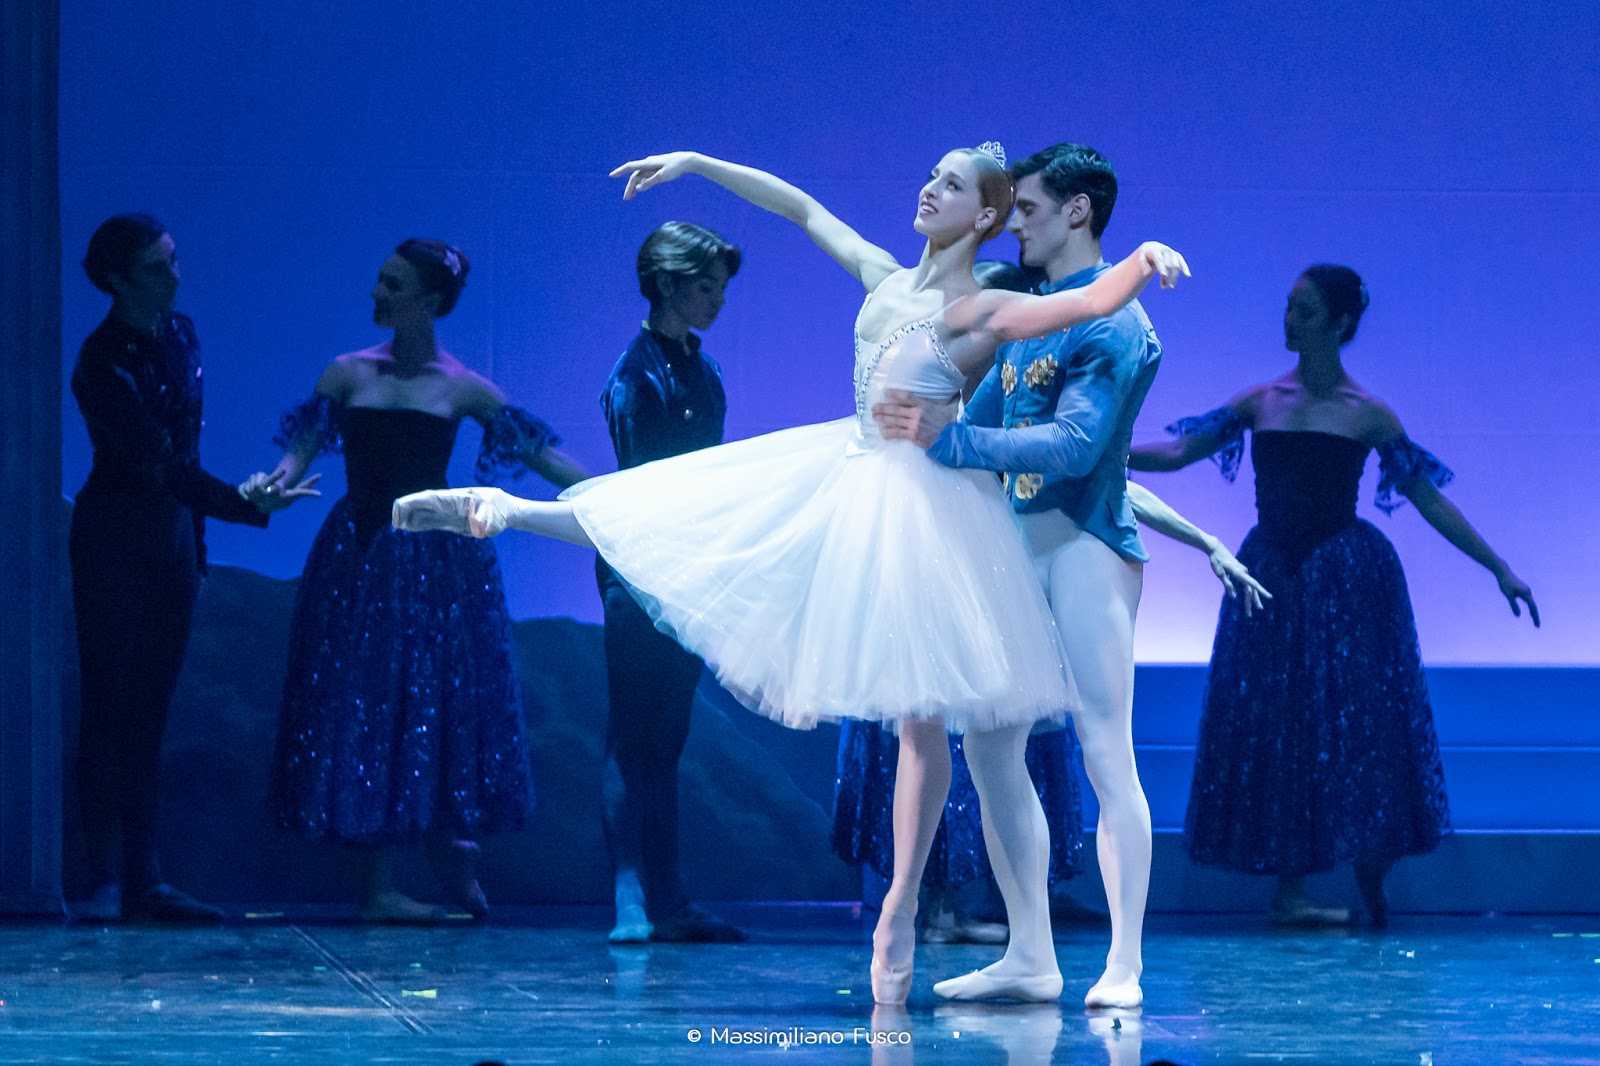 Domani al Politeama “Cenerentola”, un classico del balletto diretto da Luciano Cannito